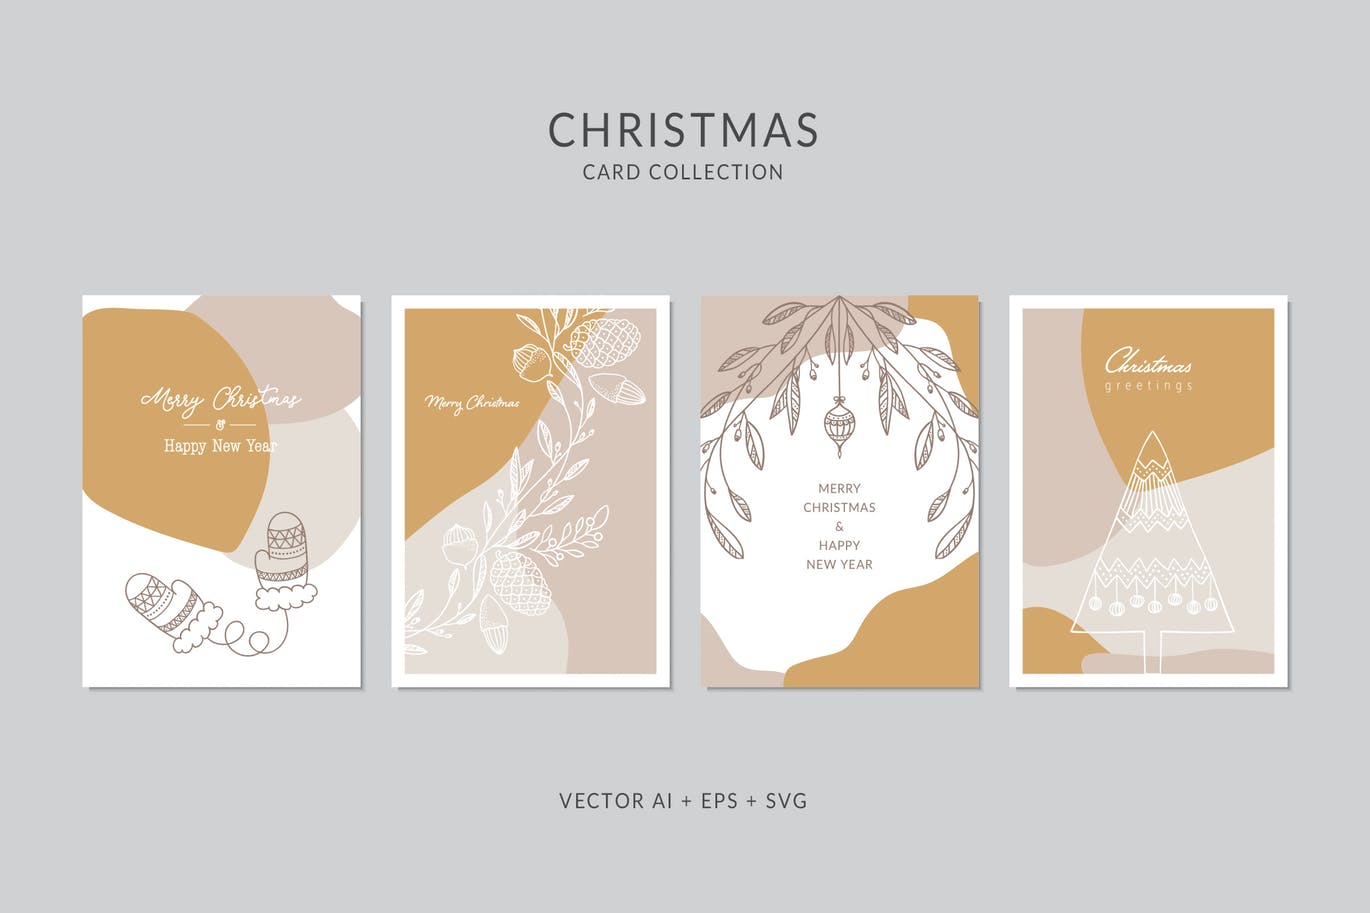 创意三色设计风格圣诞节贺卡矢量设计模板集v6 Christmas Greeting Card Vector Set插图